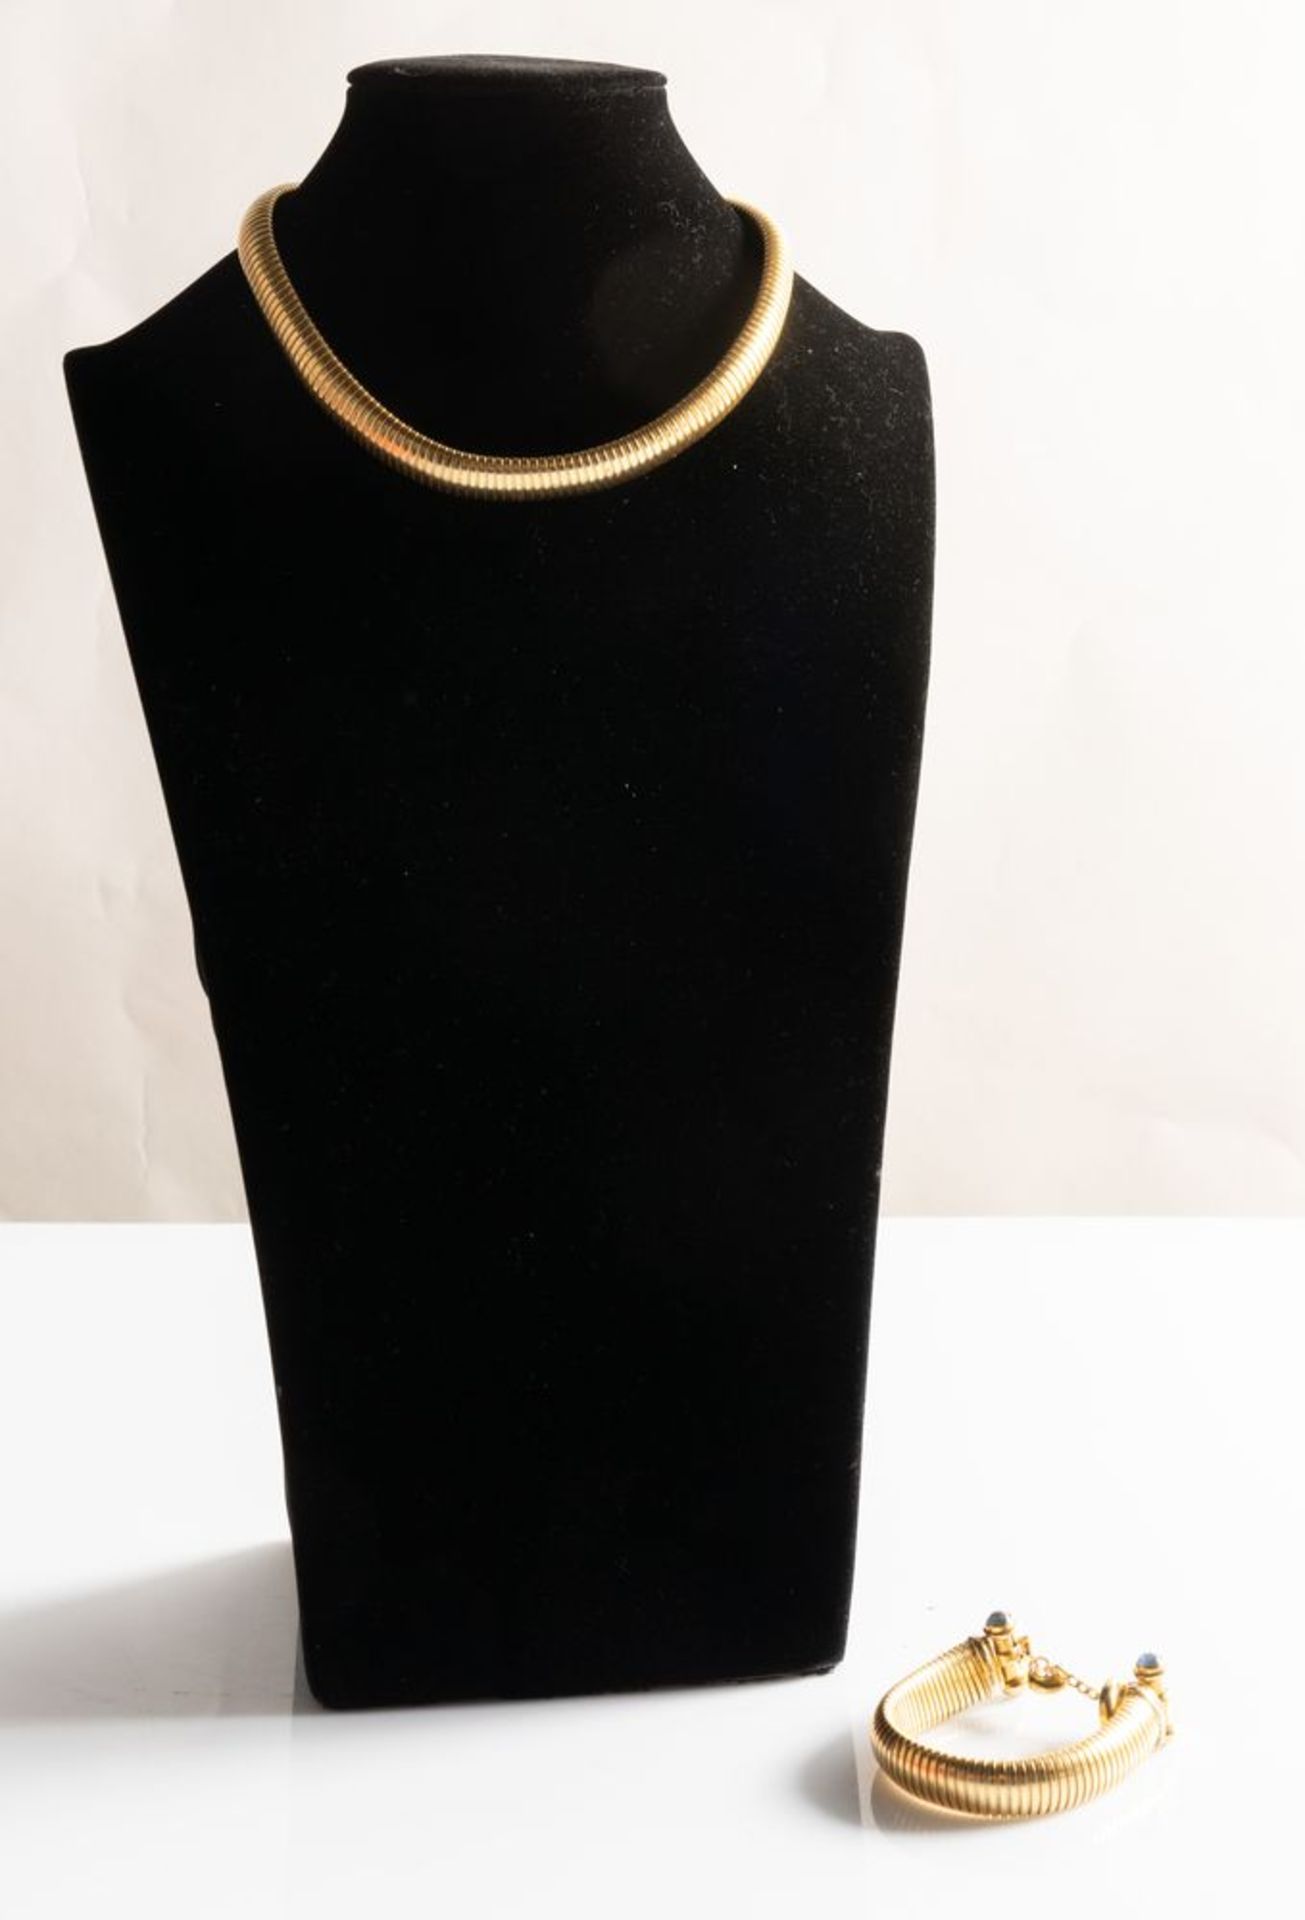 DEMIPARURE IN ORO GIALLO
Costituita da bracciale e collana in oro giallo 18k con inserti di pietra a - Bild 2 aus 8